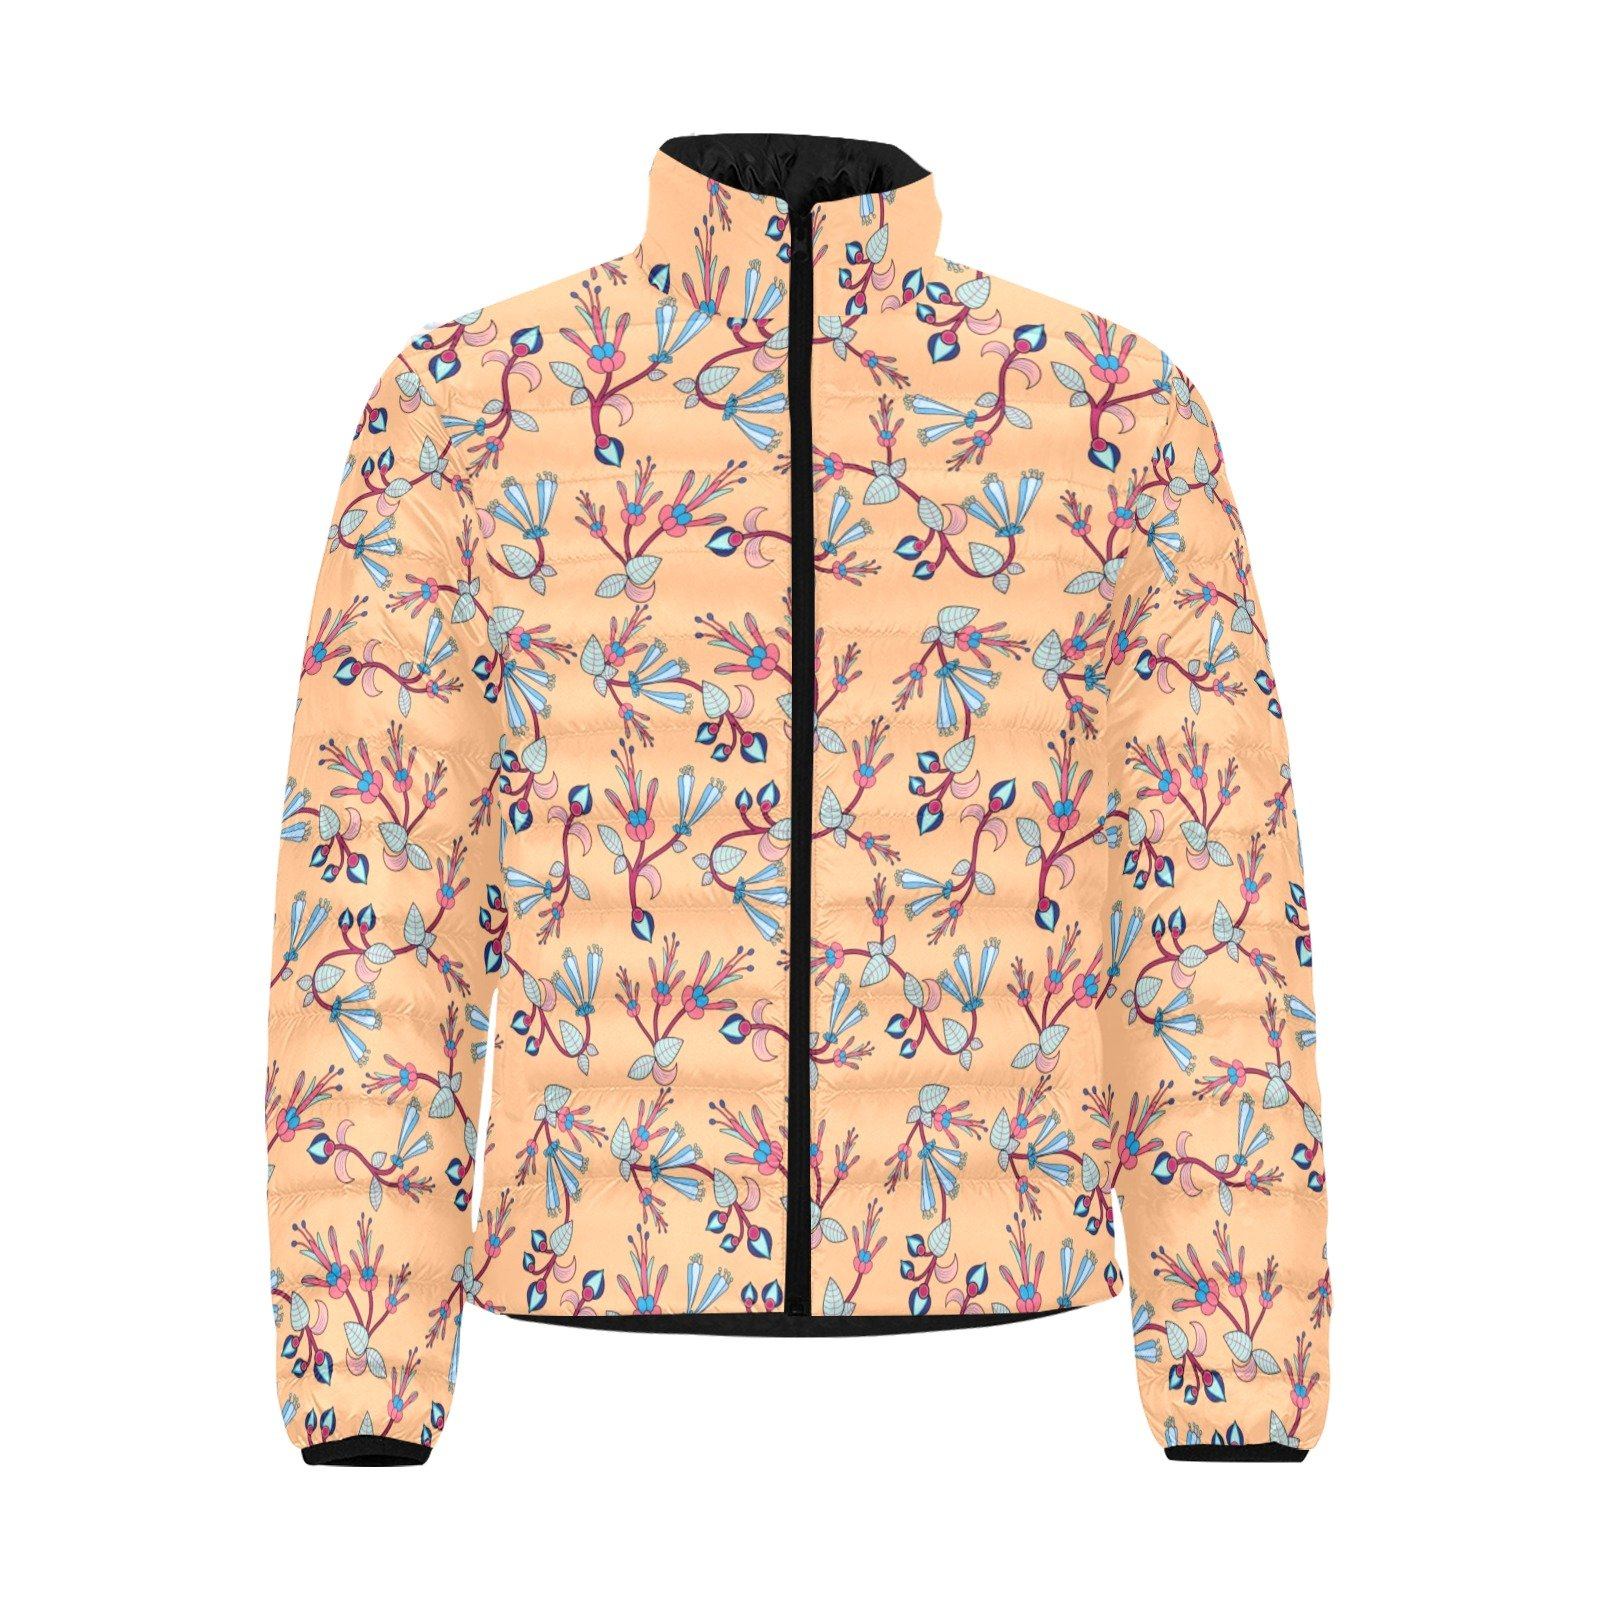 Swift Floral Peache Men's Stand Collar Padded Jacket (Model H41) Men's Stand Collar Padded Jacket (H41) e-joyer 